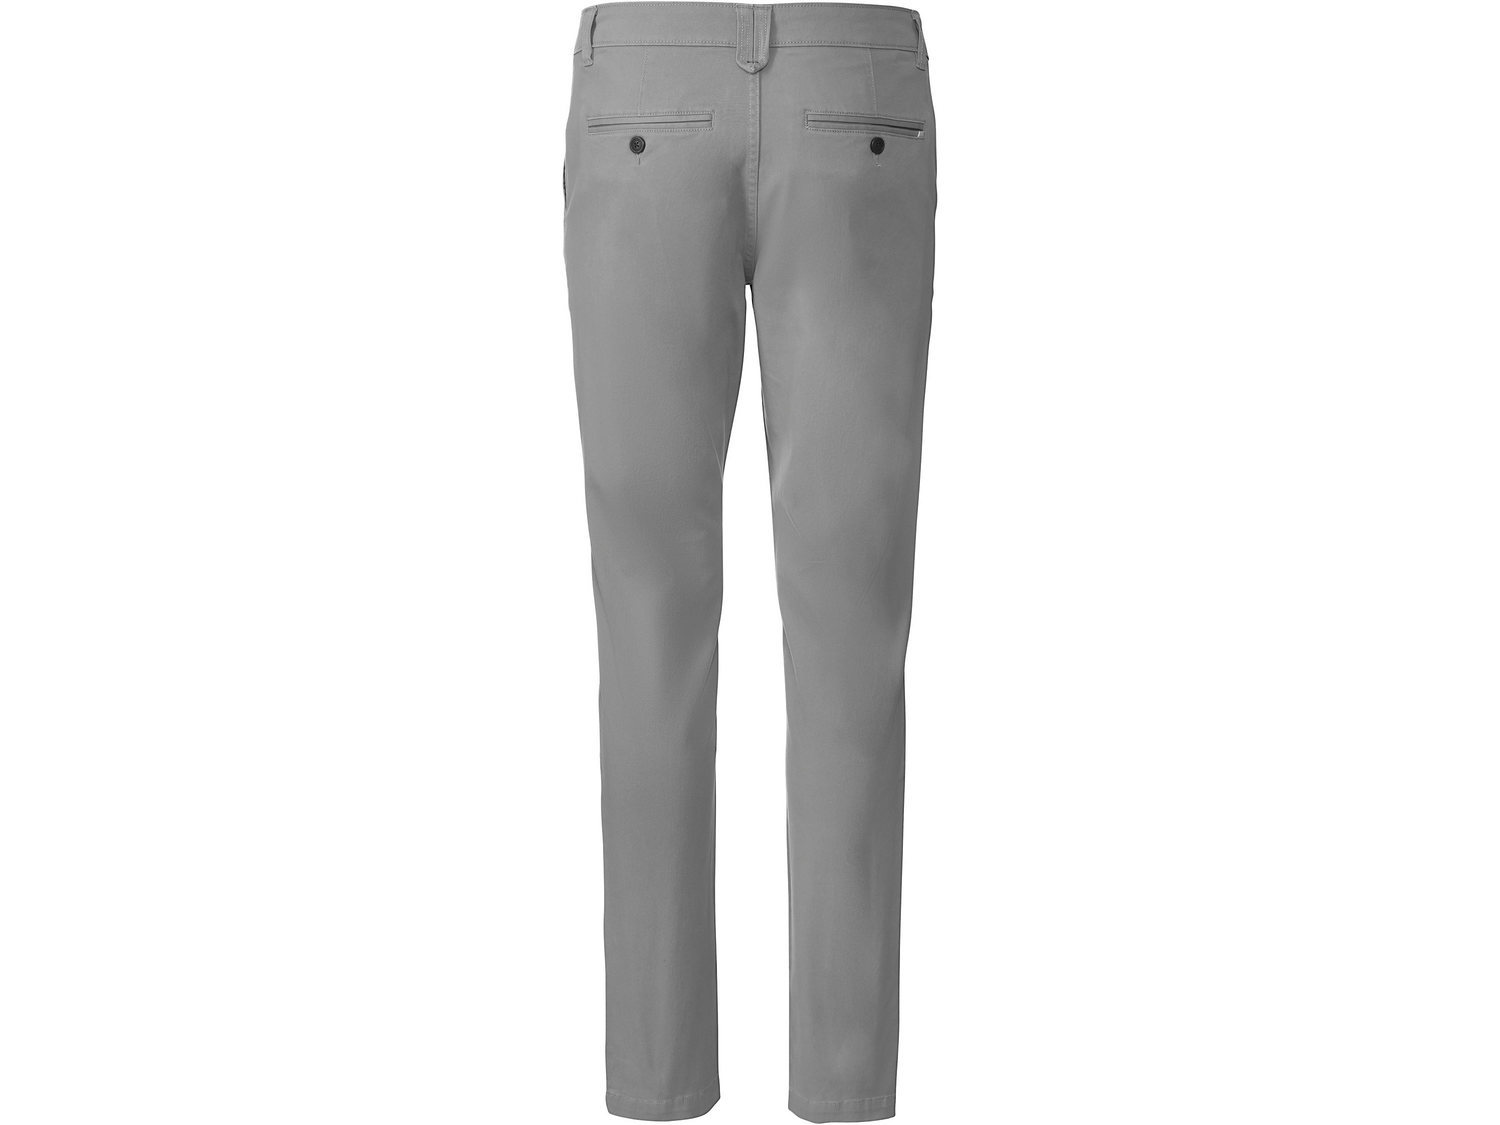 Spodnie typu chino Livergy, cena 44,99 PLN 
- rozmiary: 48-54
- Hohenstein bezpieczne ...